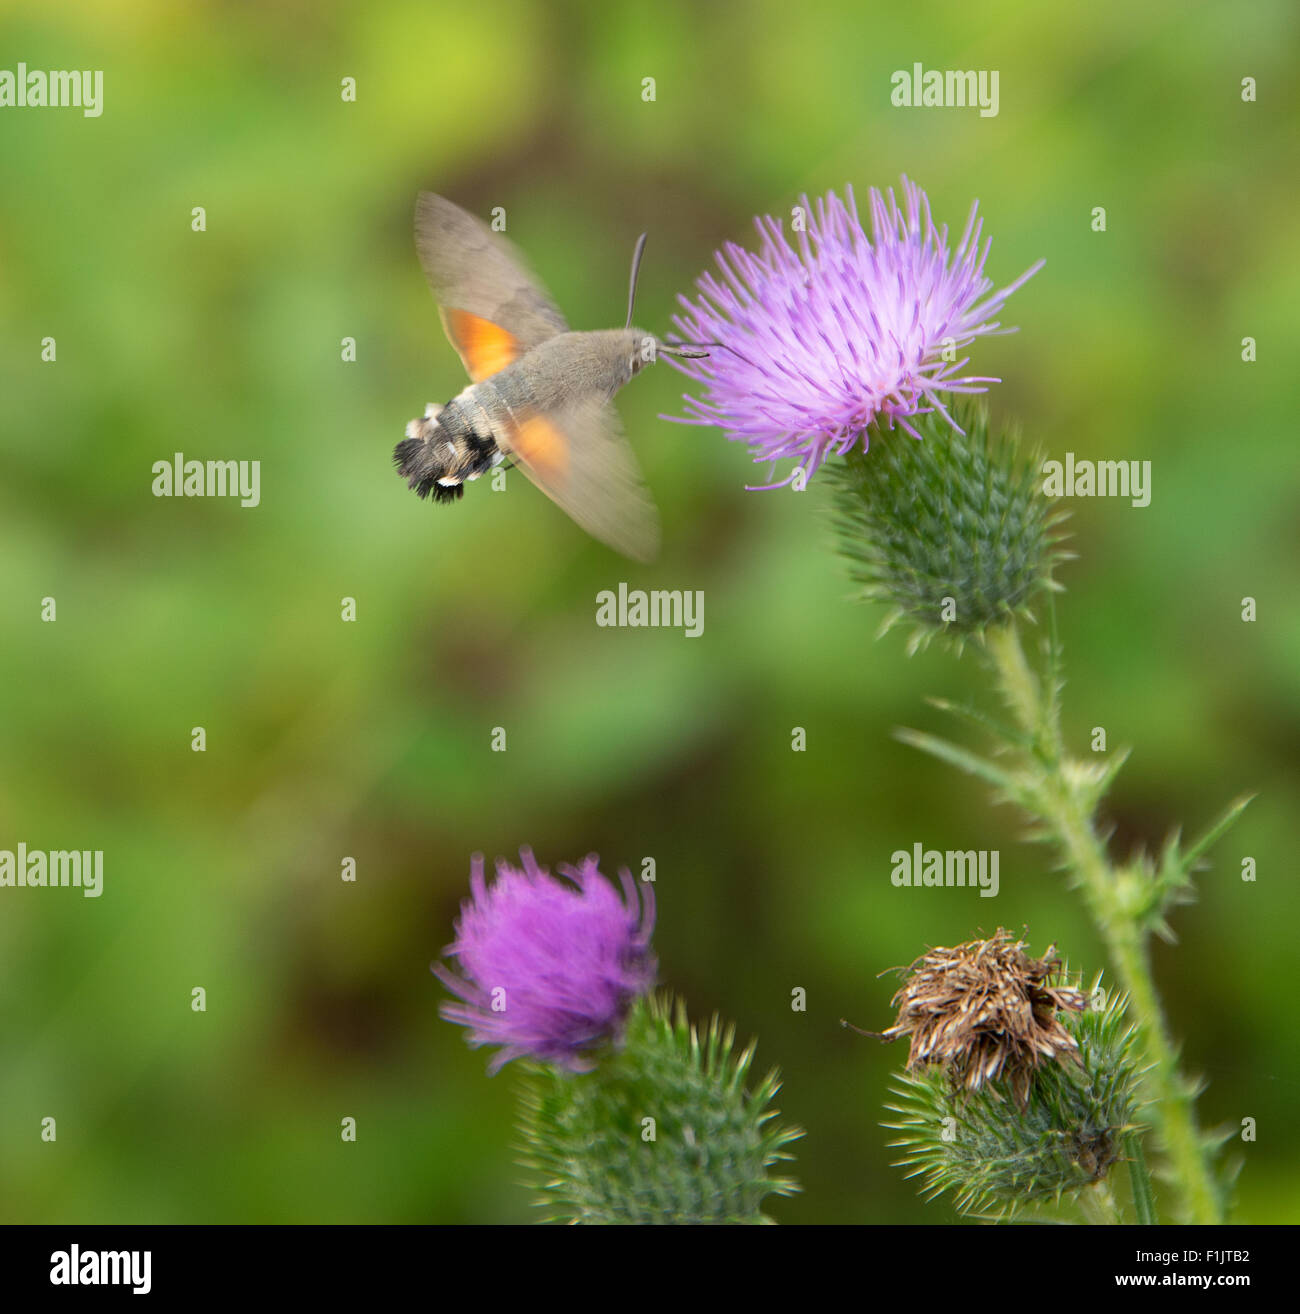 Schmetterling namens Kolibri Falke-Motte fliegen um eine Distel Blume Stockfoto